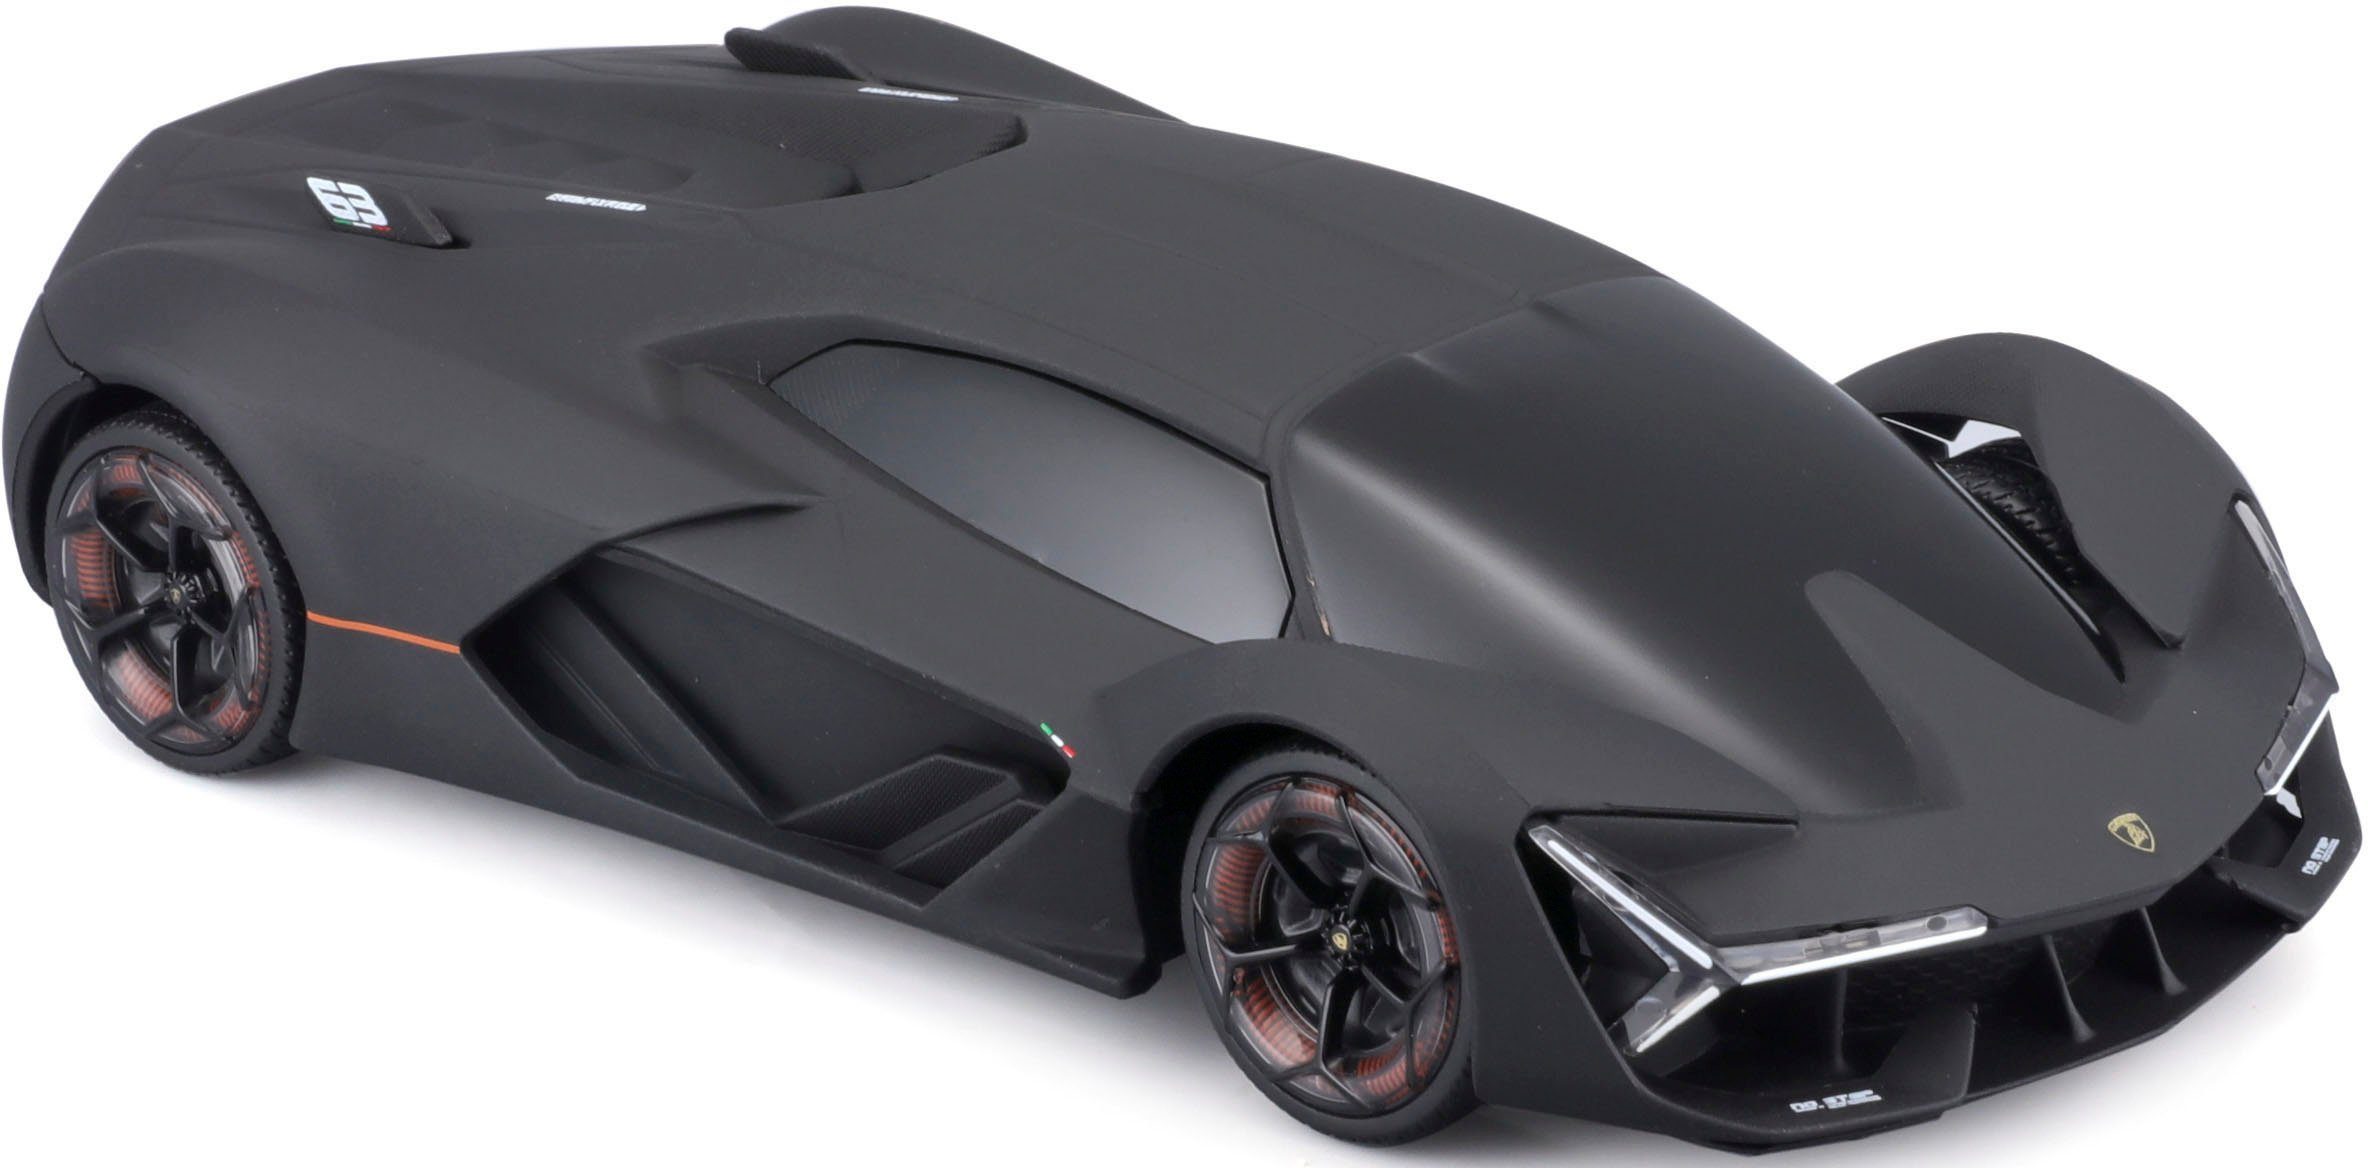  Maisto Tech R/C 1:24 Scale 2.4 GHz Lamborghini Terzo Millenio,  Gloss Black : Toys & Games